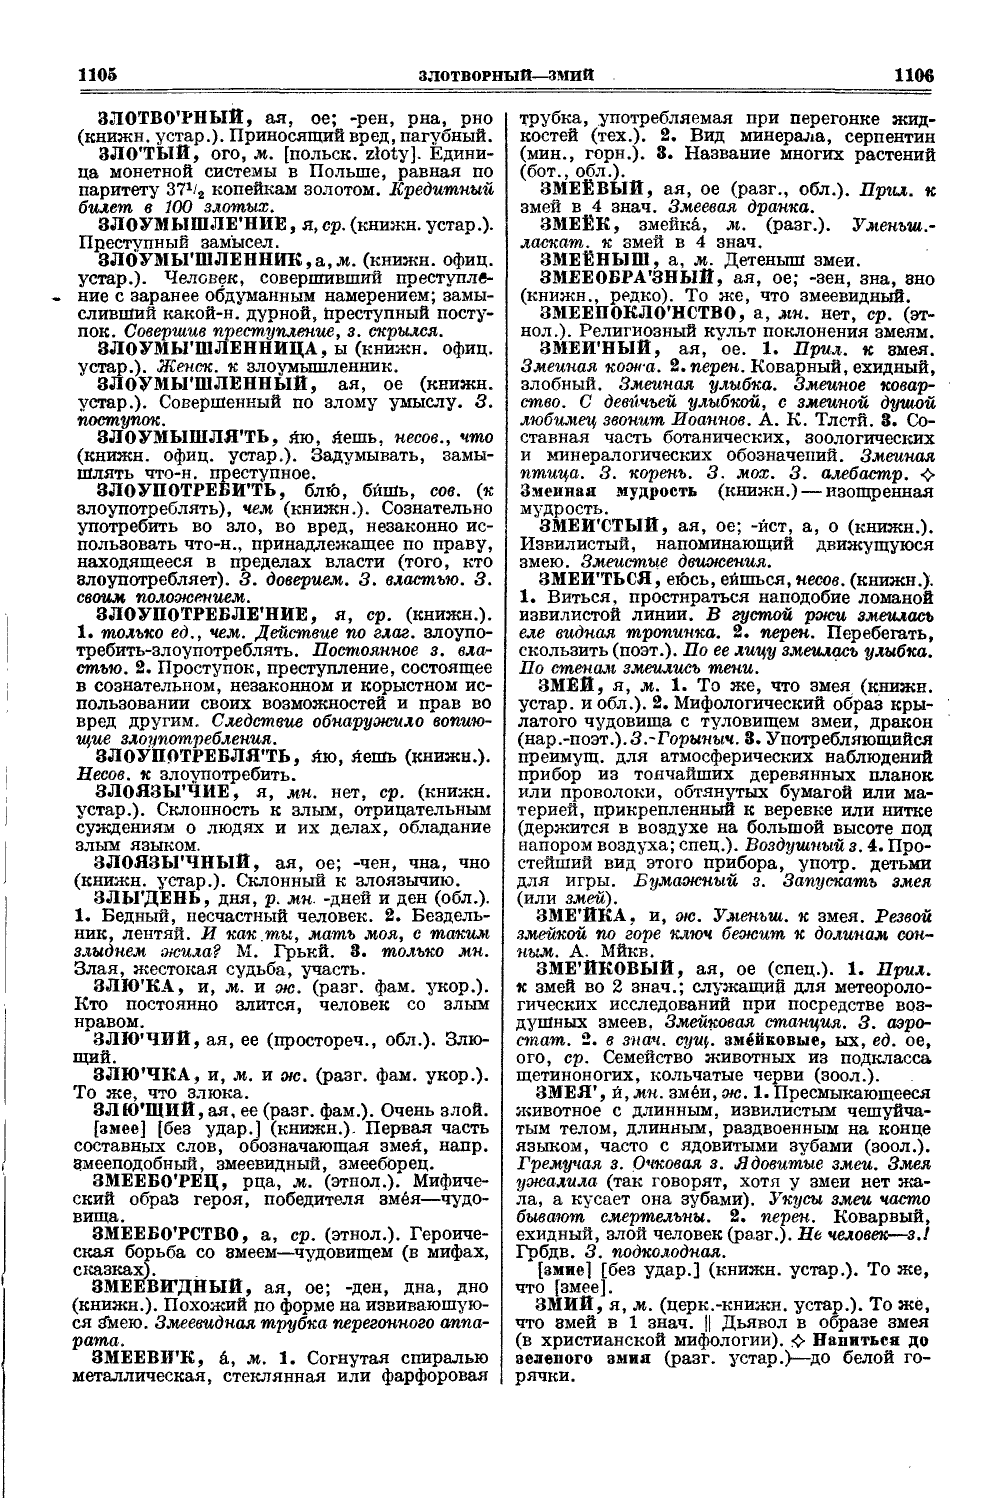 Фотокопия pdf / скан страницы 591 толкового словаря Ушакова (том 1)